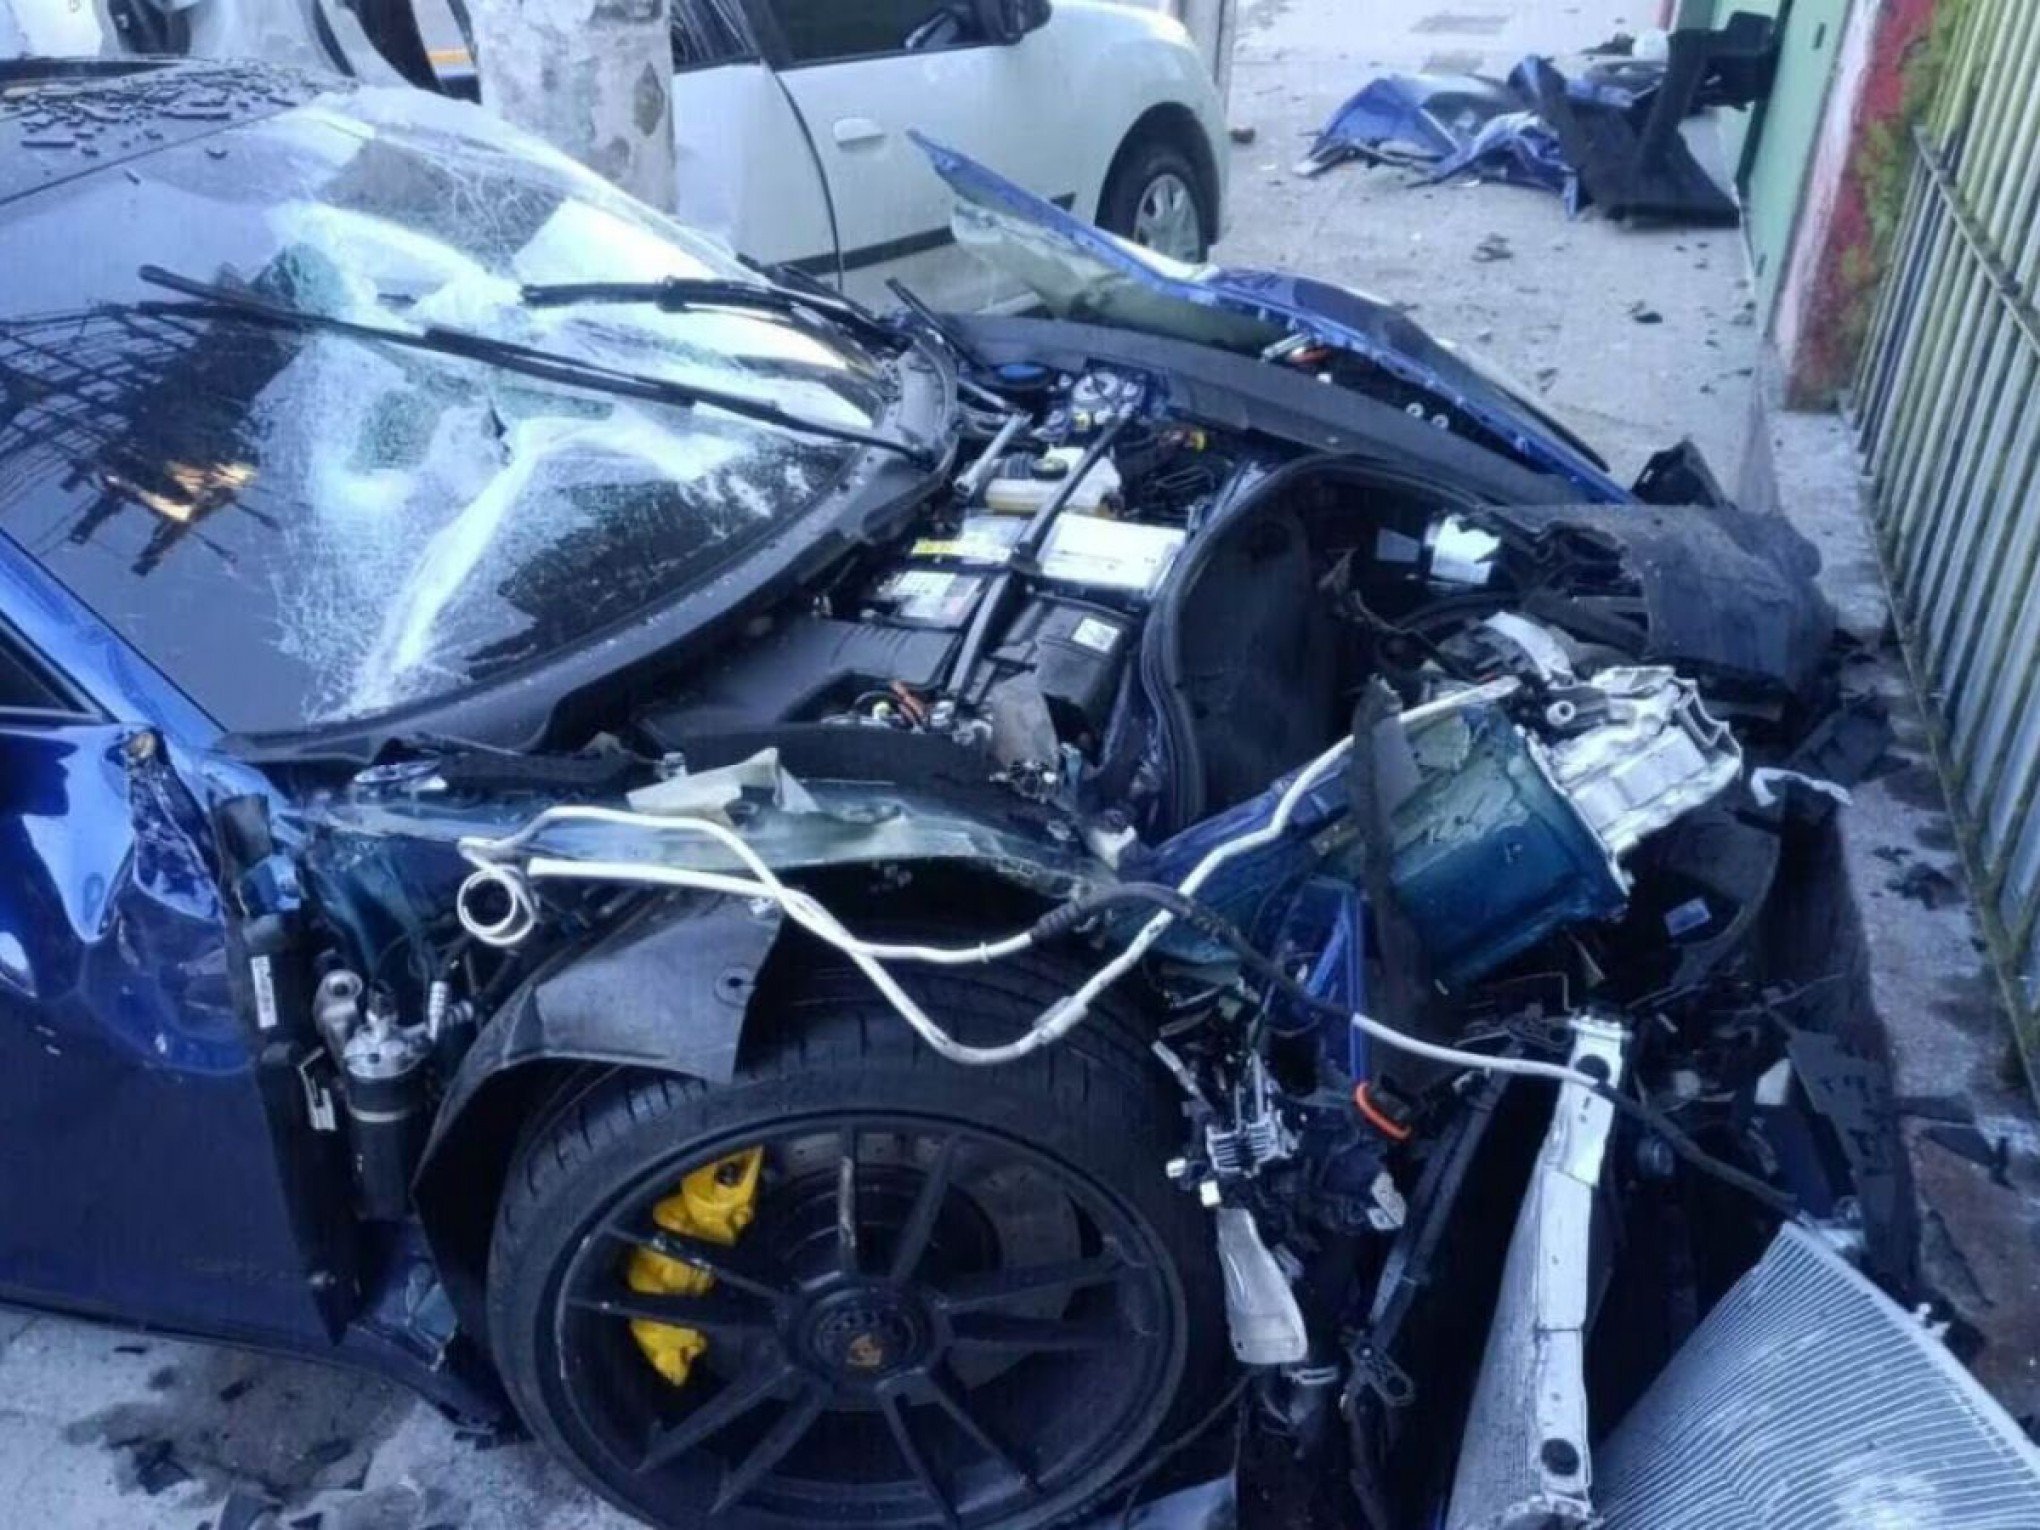 Motorista de Porsche recuperou CNH suspensa 12 dias antes do acidente com morte em SP